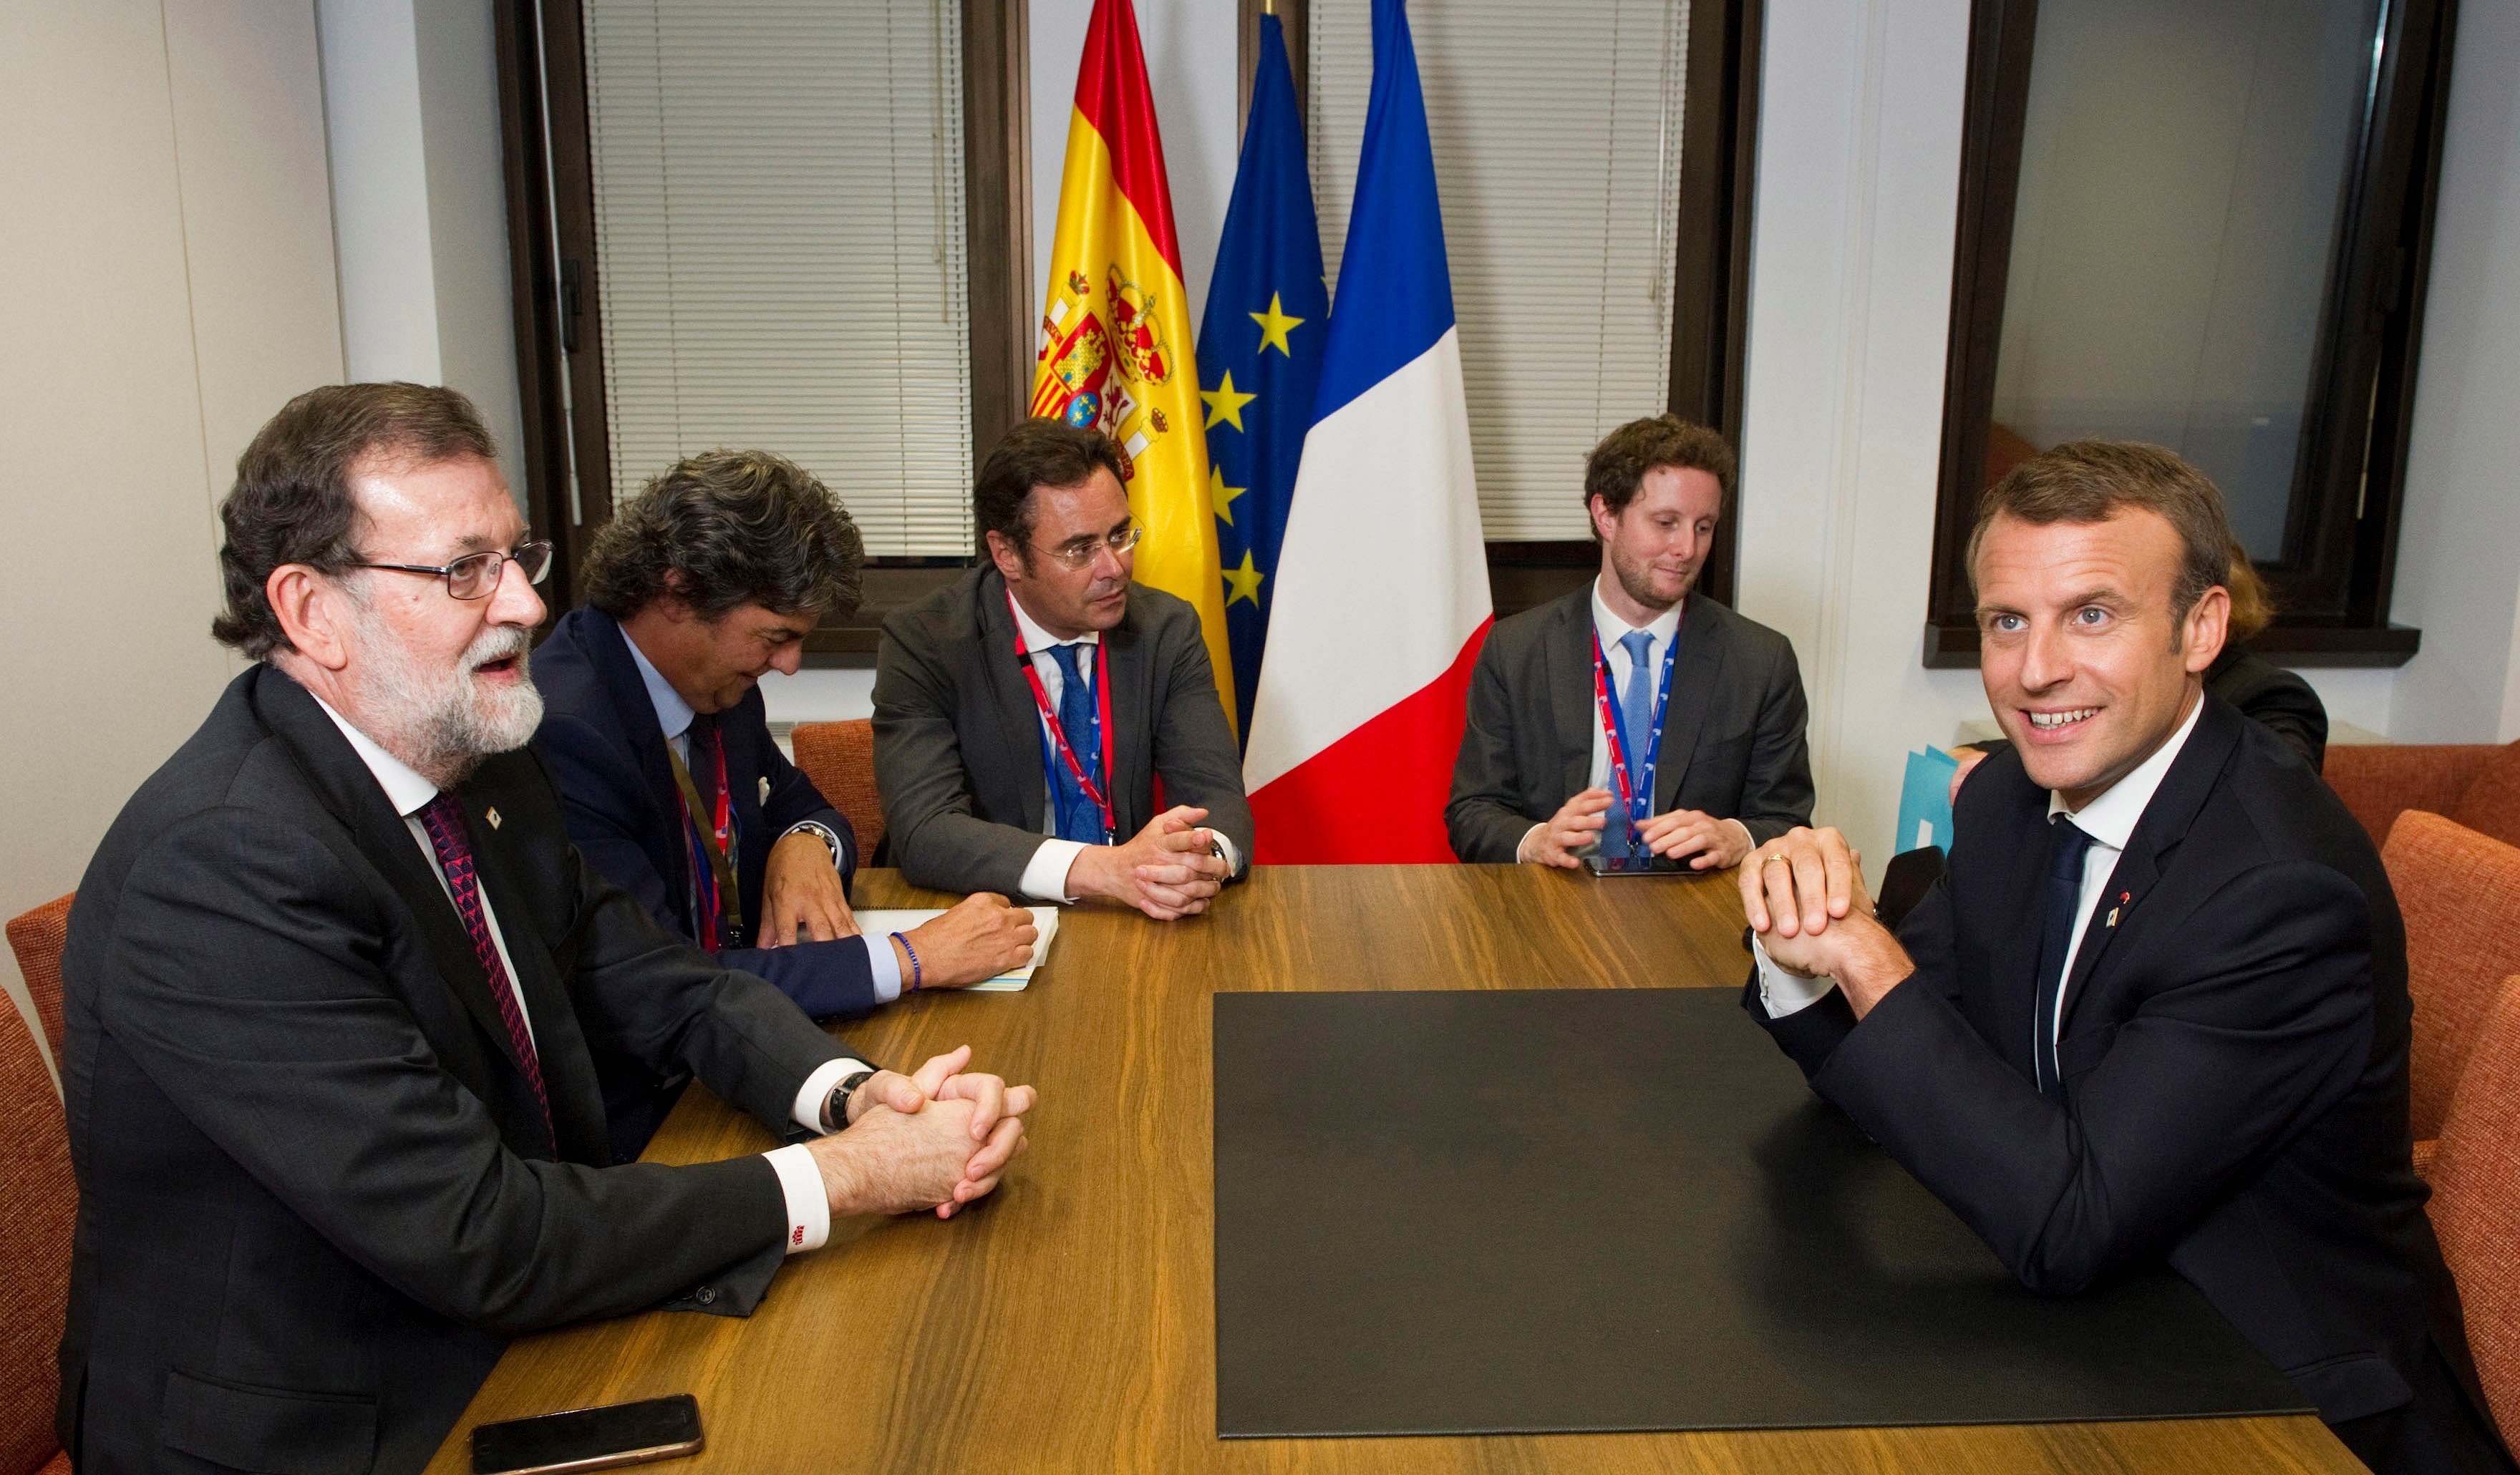 España hizo una concesión a Francia a cambio de su apoyo al 155, según 'Le Point'